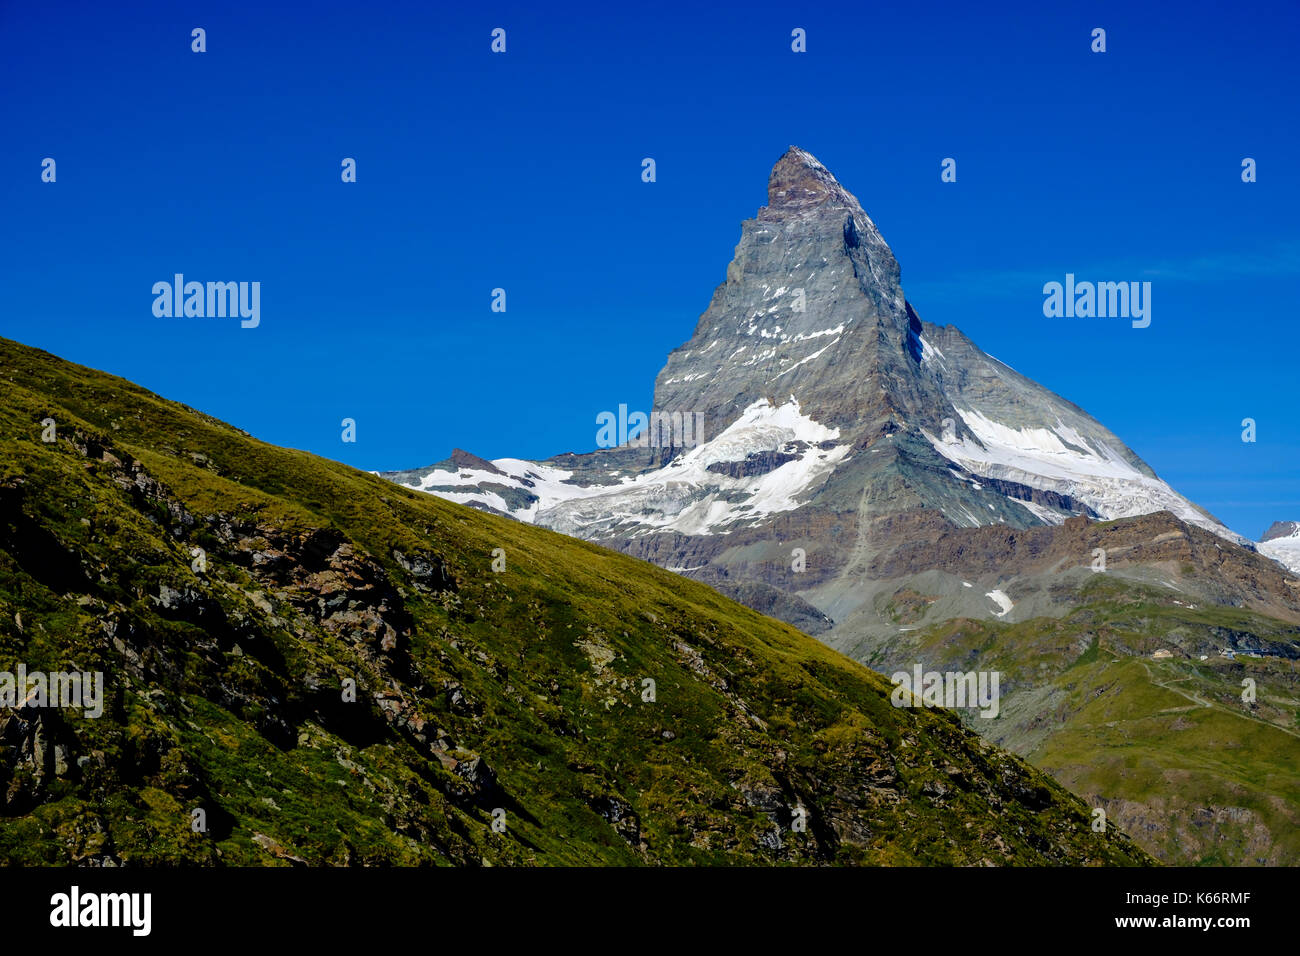 L'Est et la face nord du mont Cervin, Monte Cervino, avec ciel bleu clair Banque D'Images